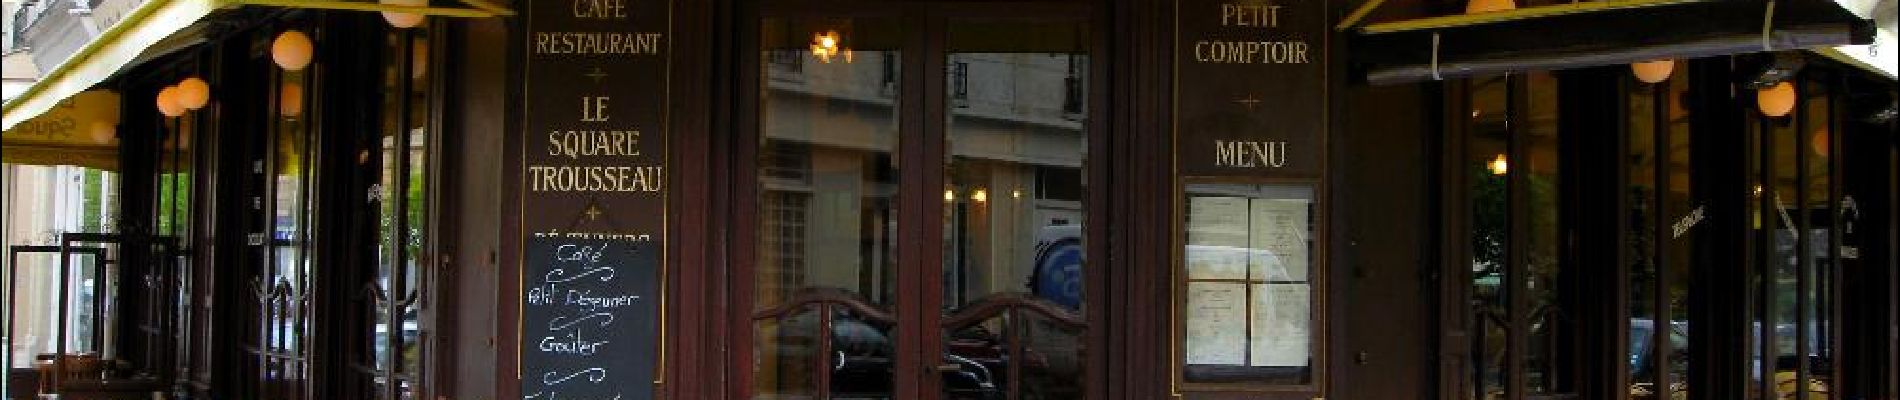 Point d'intérêt Paris - Diner - Photo